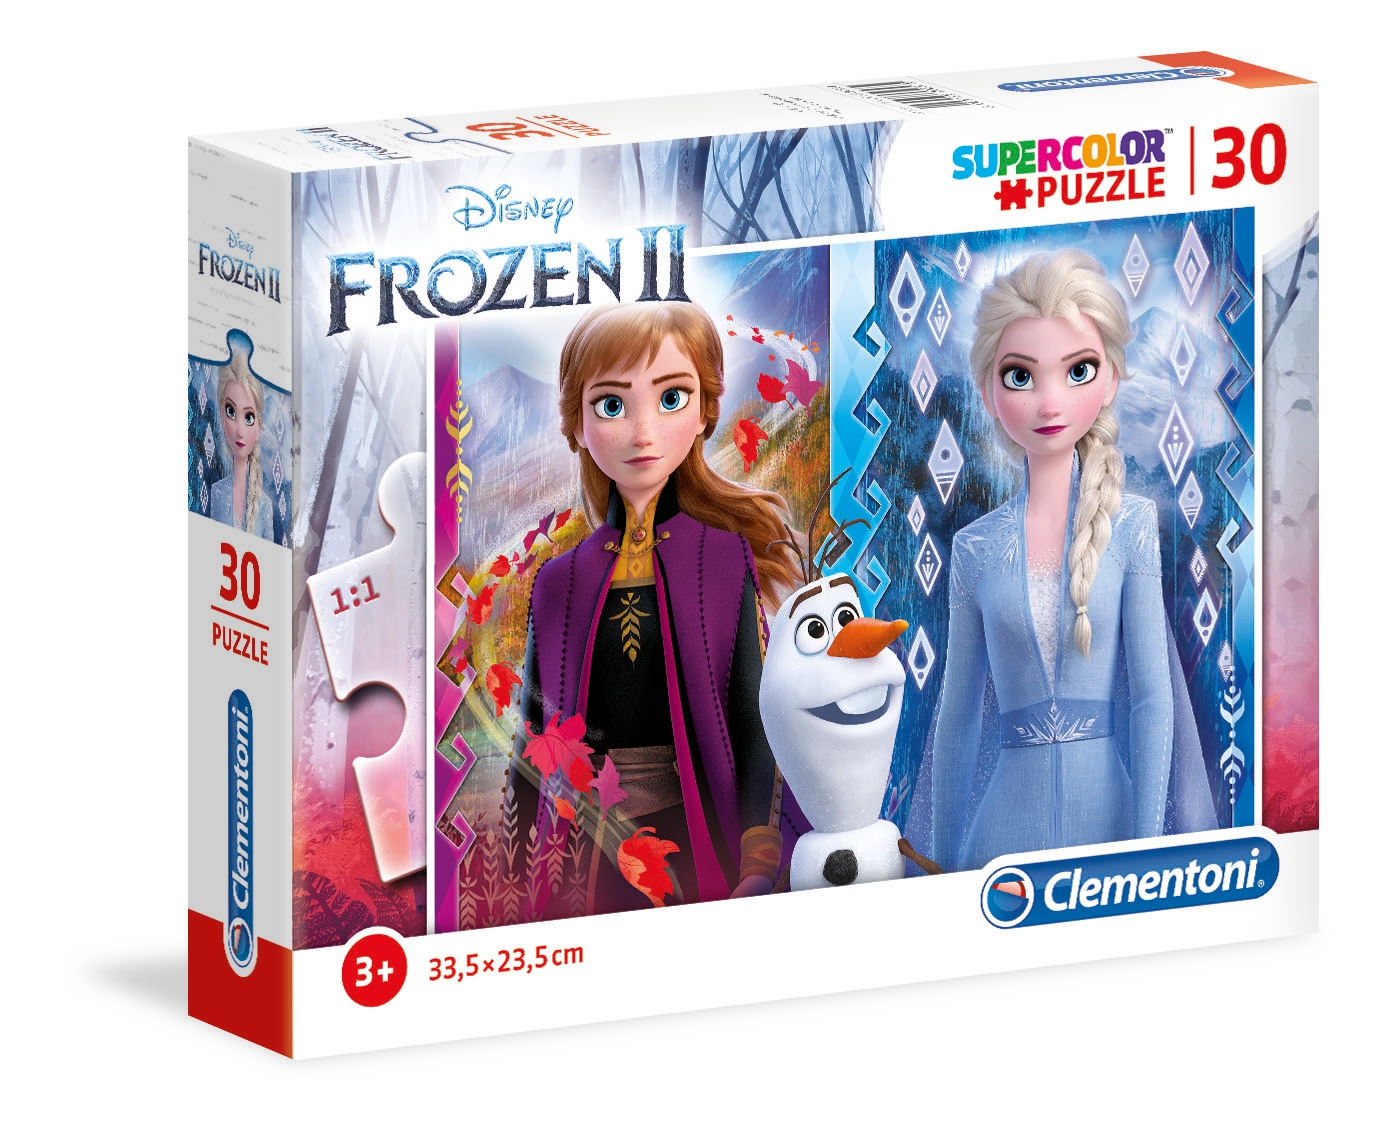 Puzzle 30 piezas -Frozen 2- Clementoni